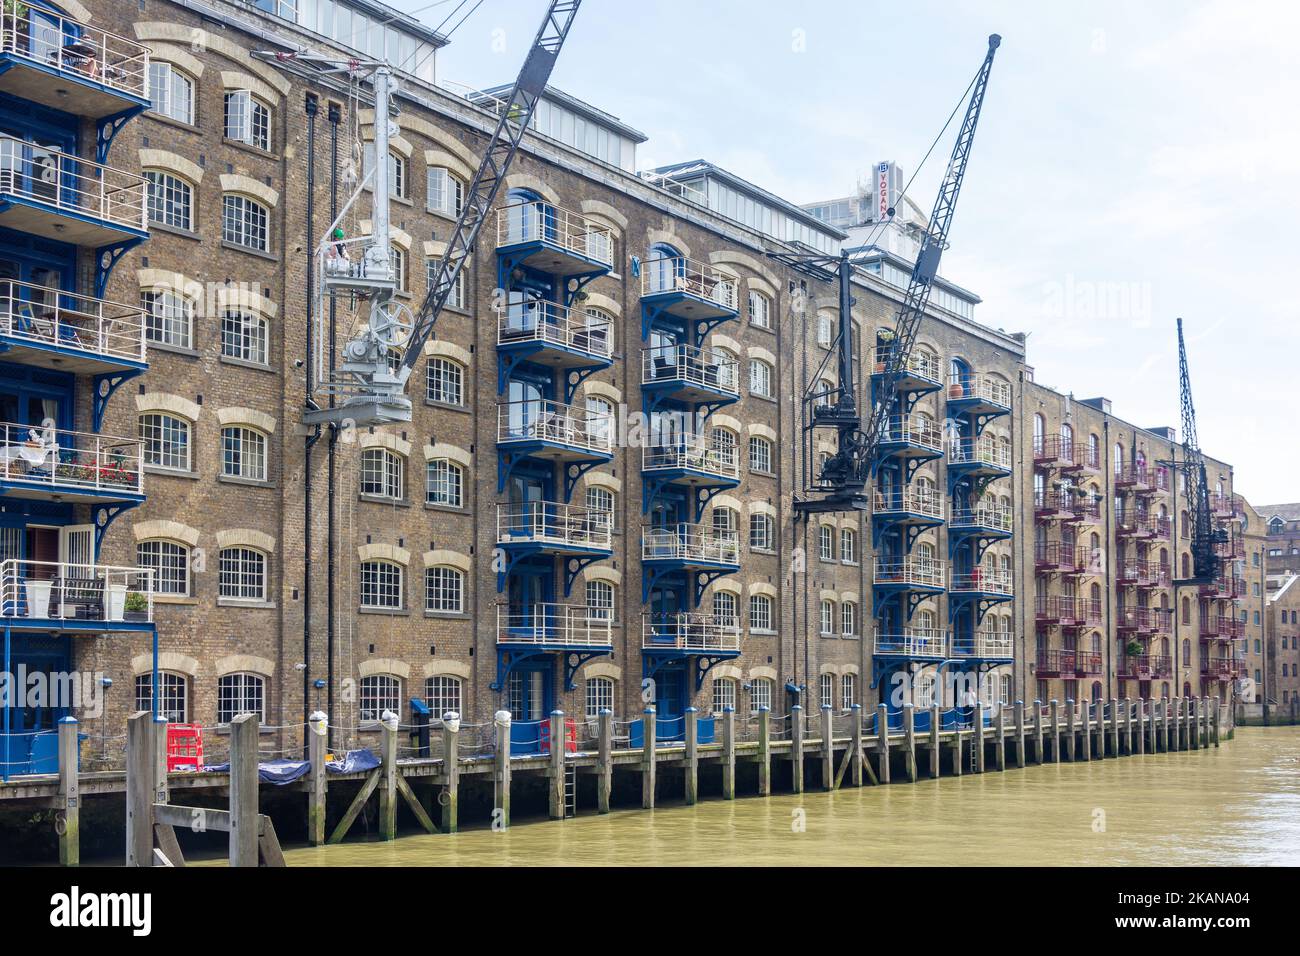 New Concordia Wharf Apartments, St Saviors Dock, Bermondsey, le quartier londonien de Southwark, Grand Londres, Angleterre, Royaume-Uni Banque D'Images